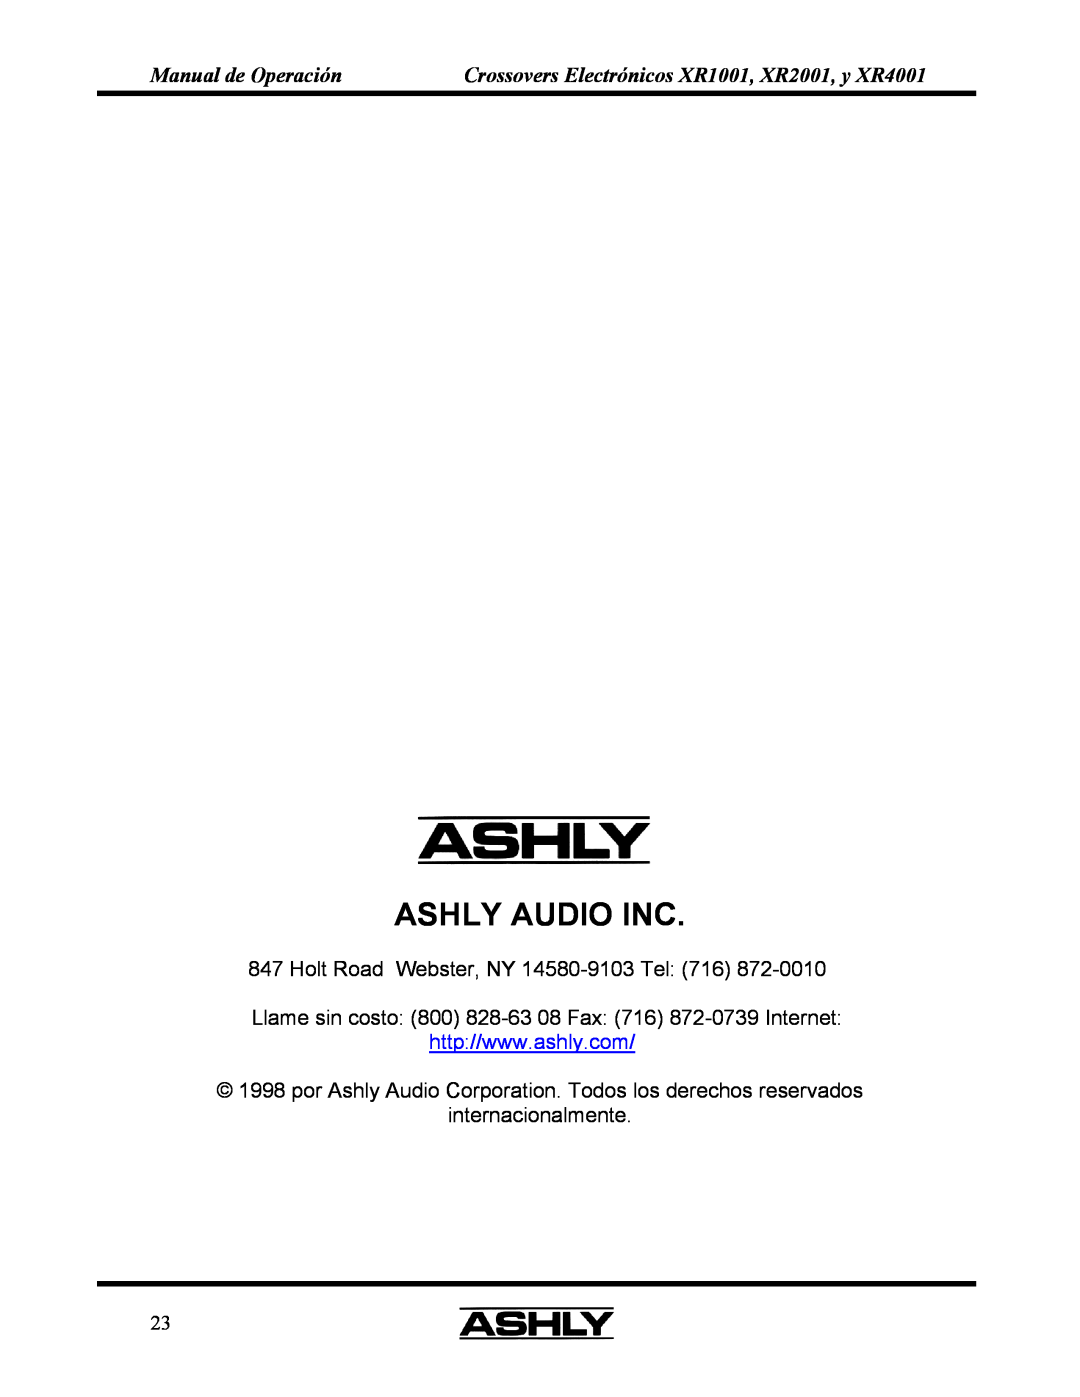 Ashly XR 1OO1 Ashly Audio Inc, Manual de Operación, Crossovers Electrónicos XR1001, XR2001, y XR4001, internacionalmente 